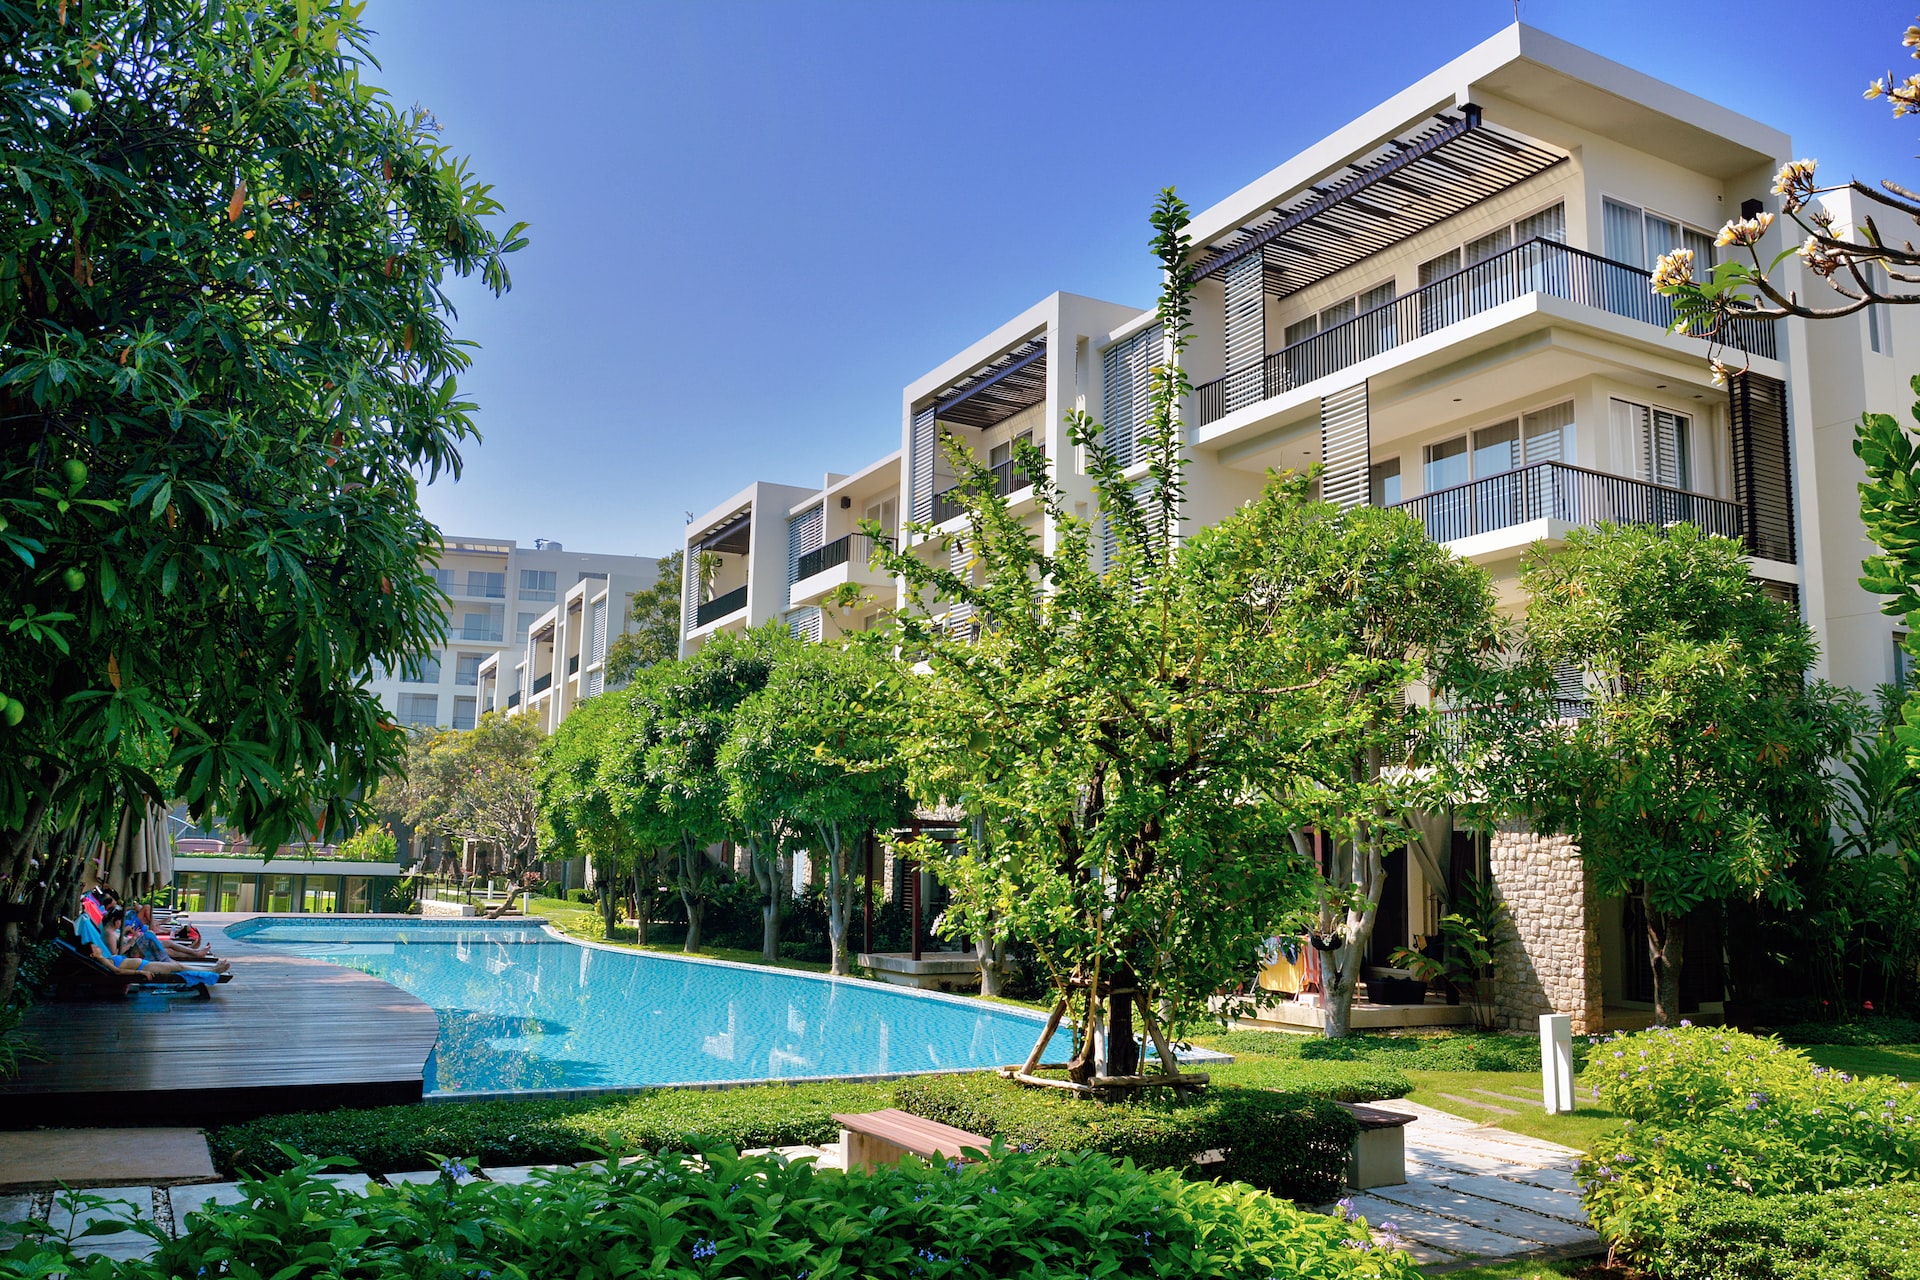 Luxuriöser Apartmentkomplex vor blauem Himmel, mit grünen Bäumen und einem riesigen Pool